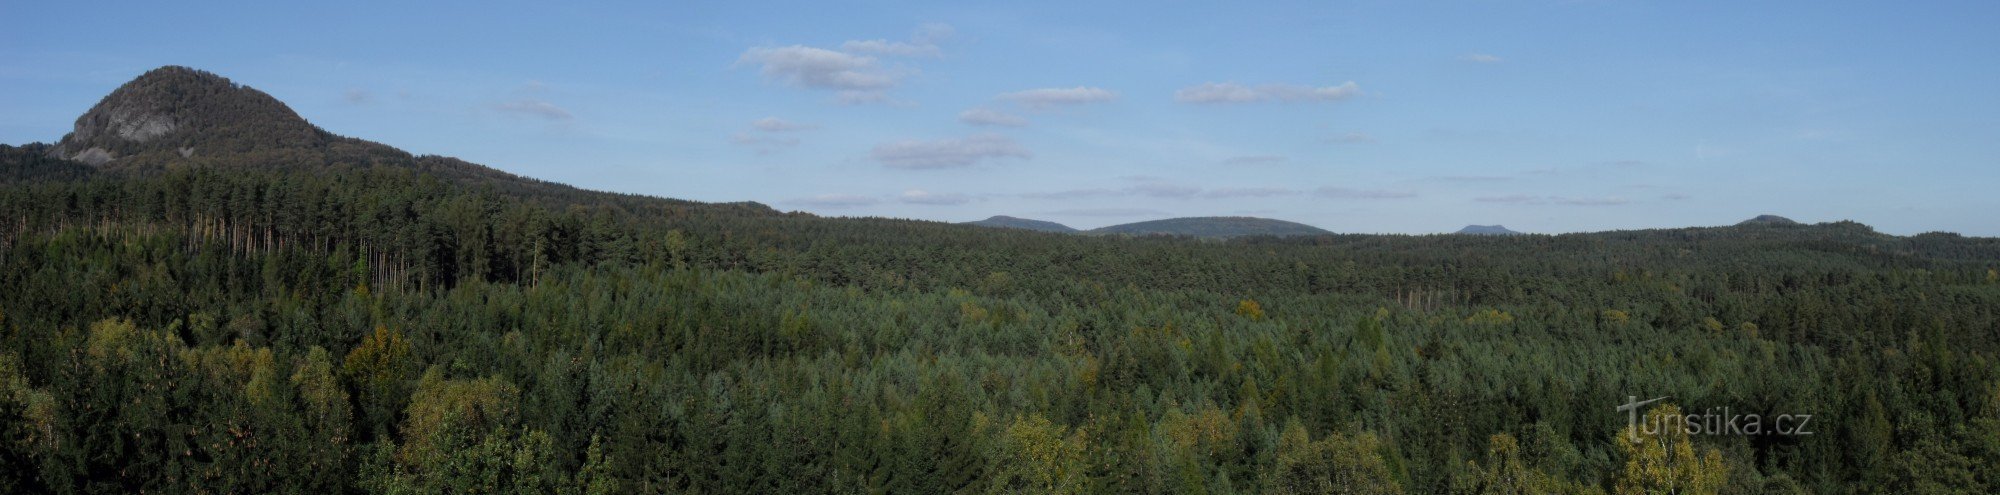 Panorama depuis le sommet de Jelení